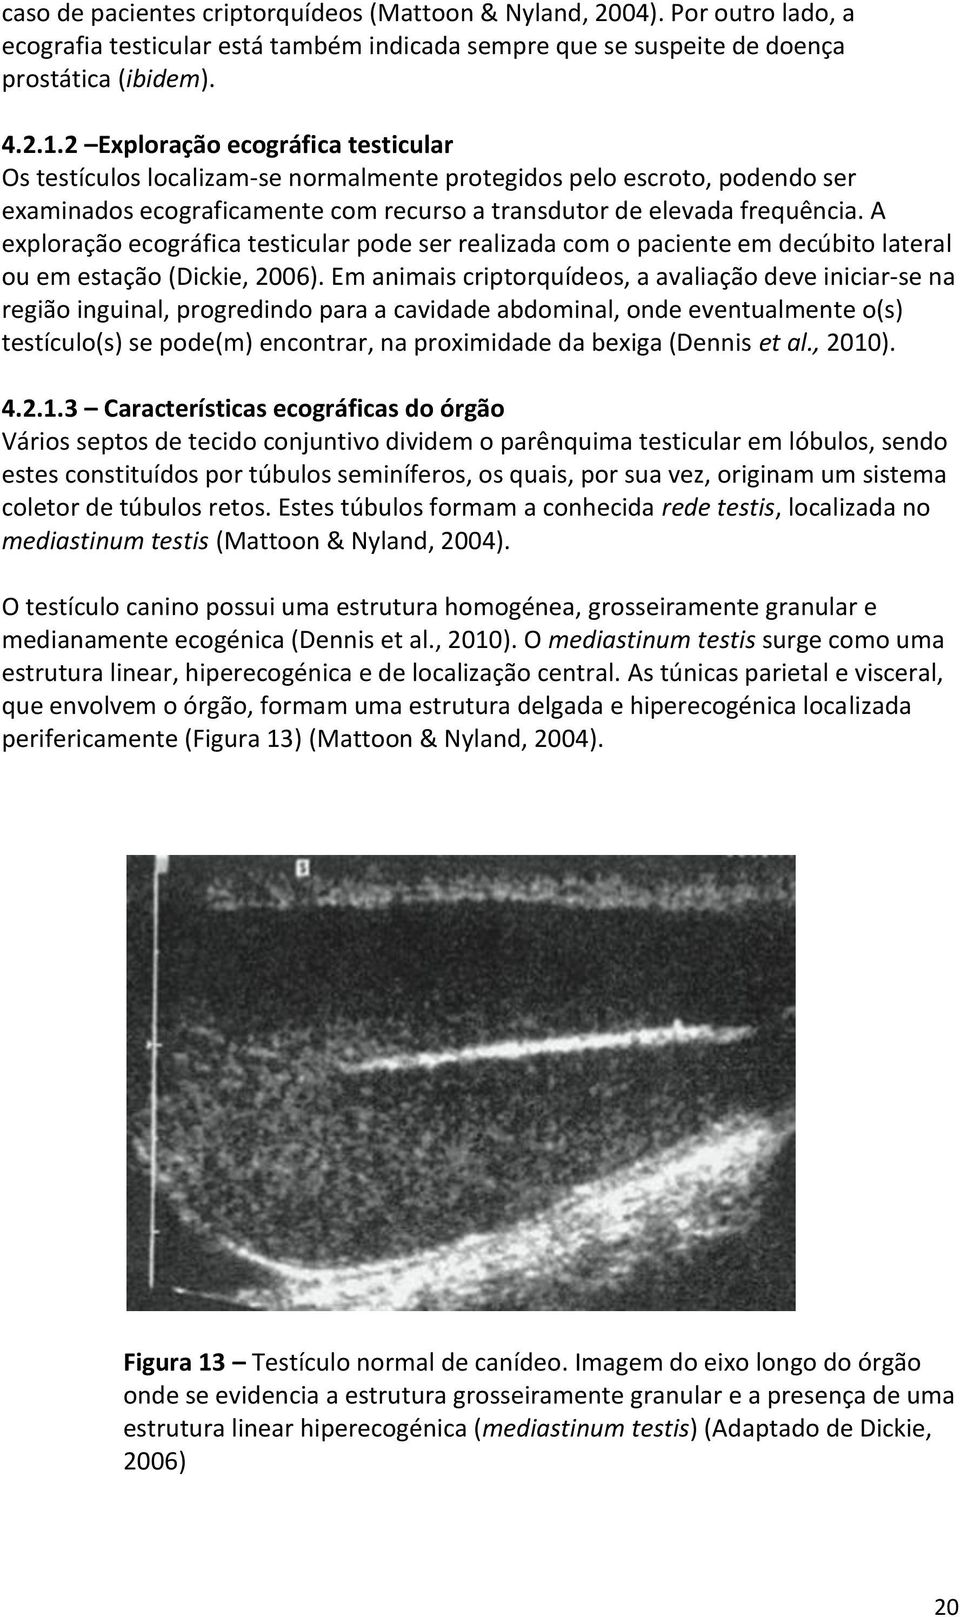 A exploração ecográfica testicular pode ser realizada com o paciente em decúbito lateral ou em estação (Dickie, 2006).